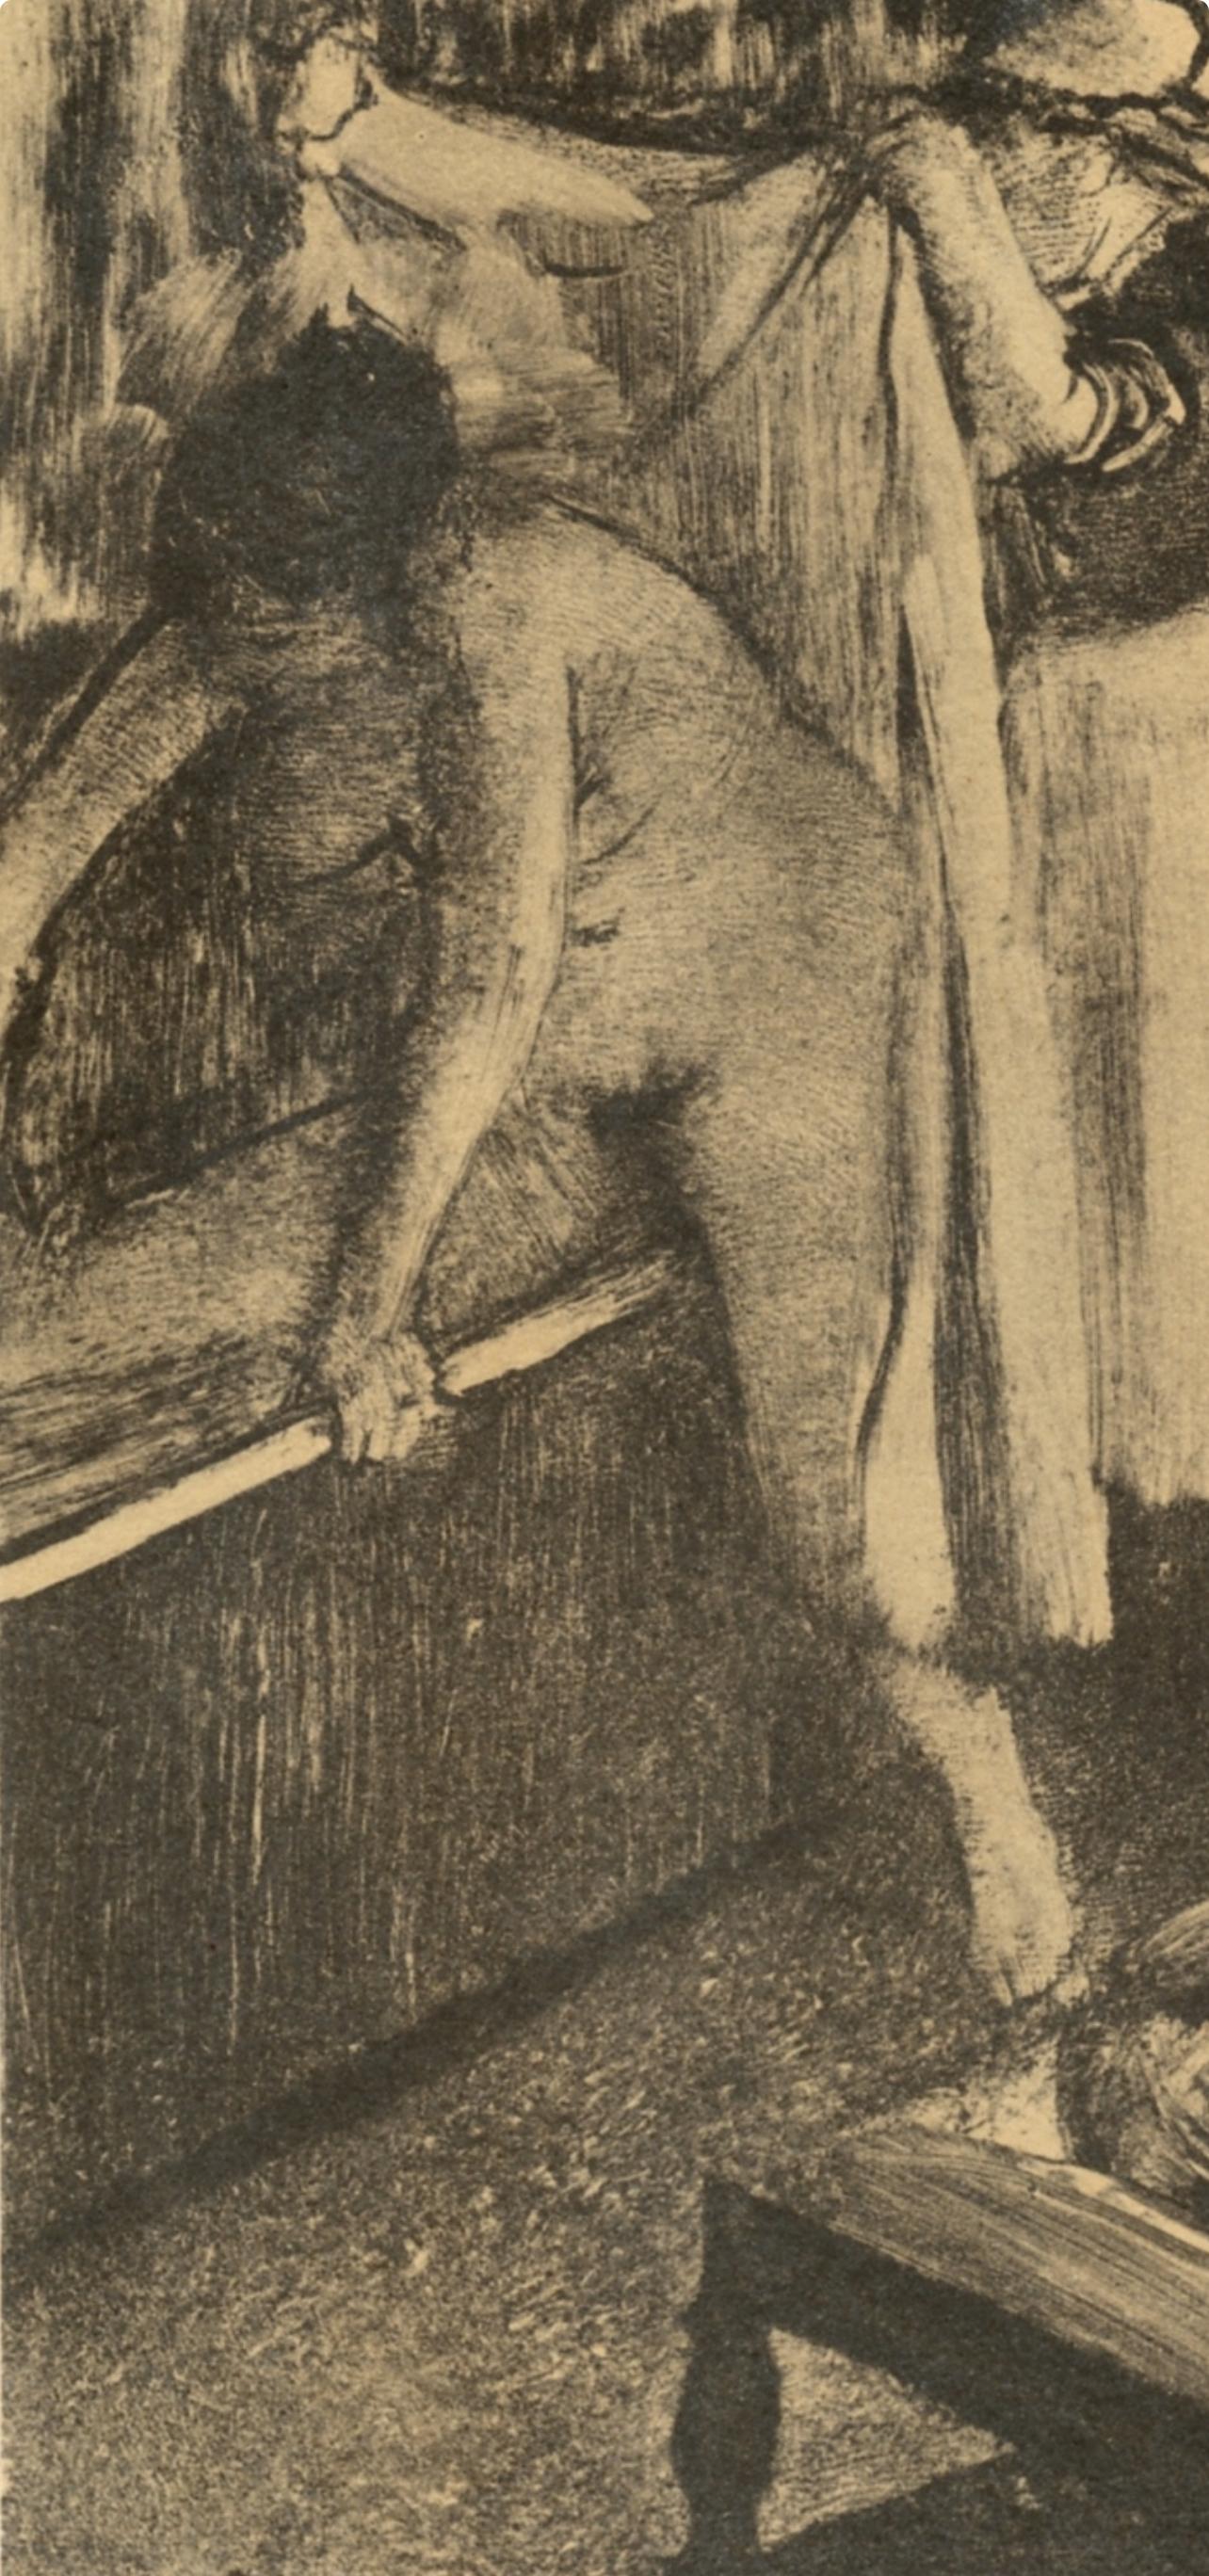 Degas, Femme sortant du bain, Les Monotypes (after) - Print by Edgar Degas